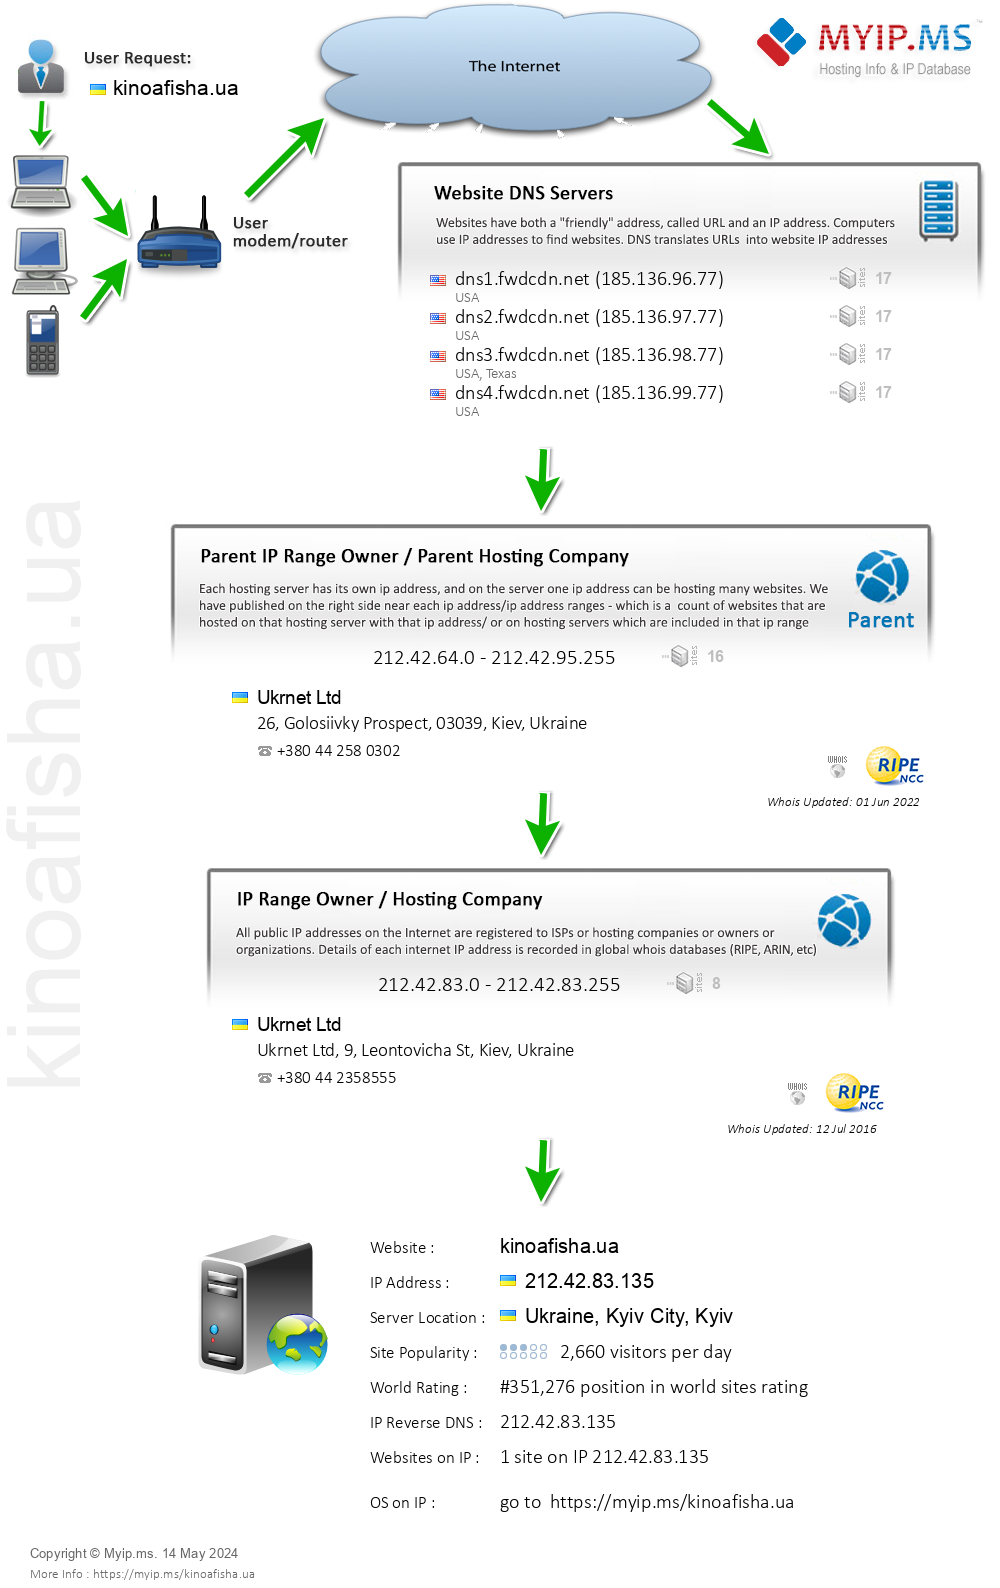 Kinoafisha.ua - Website Hosting Visual IP Diagram